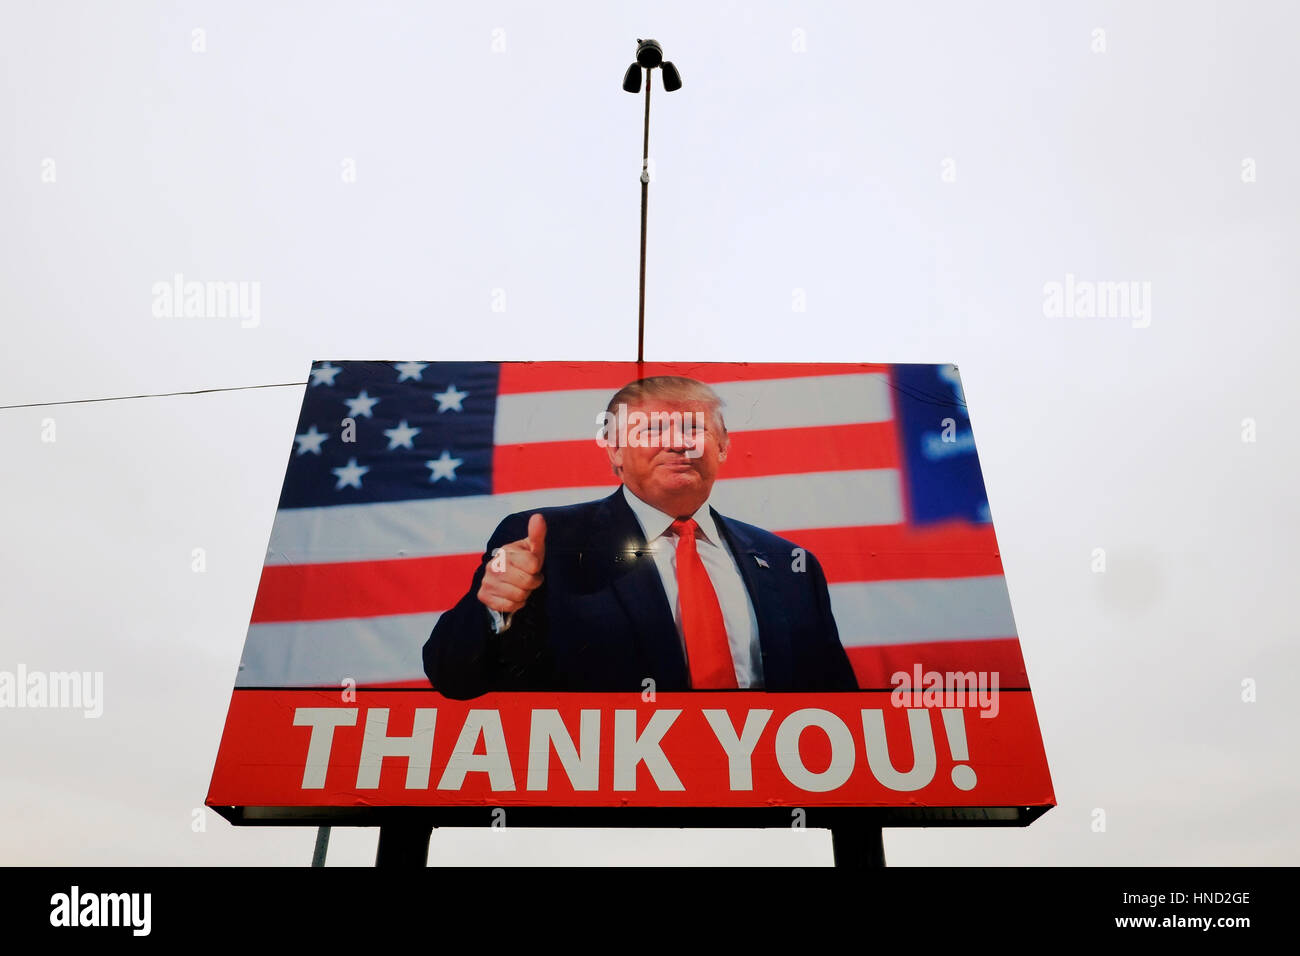 Un cartello stradale dispone di Donald Trump ringraziando gli elettori in seguito alla sua elezione a Presidente degli Stati Uniti. Foto Stock